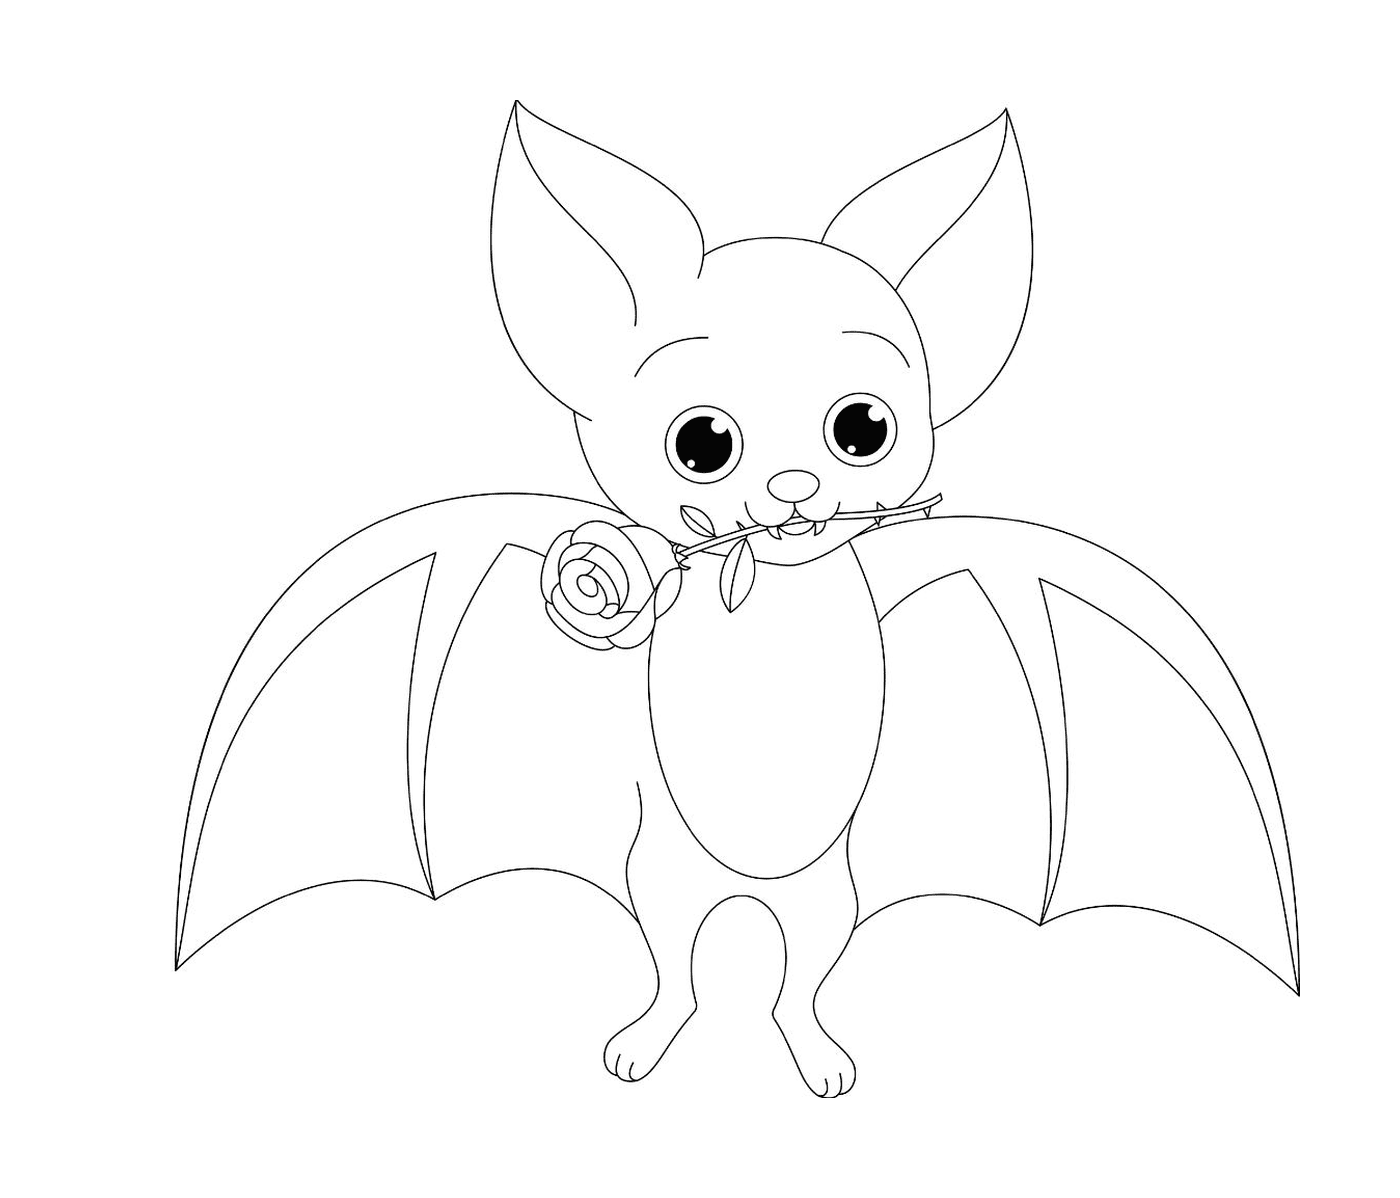  segurando um morcego segurando uma rosa 